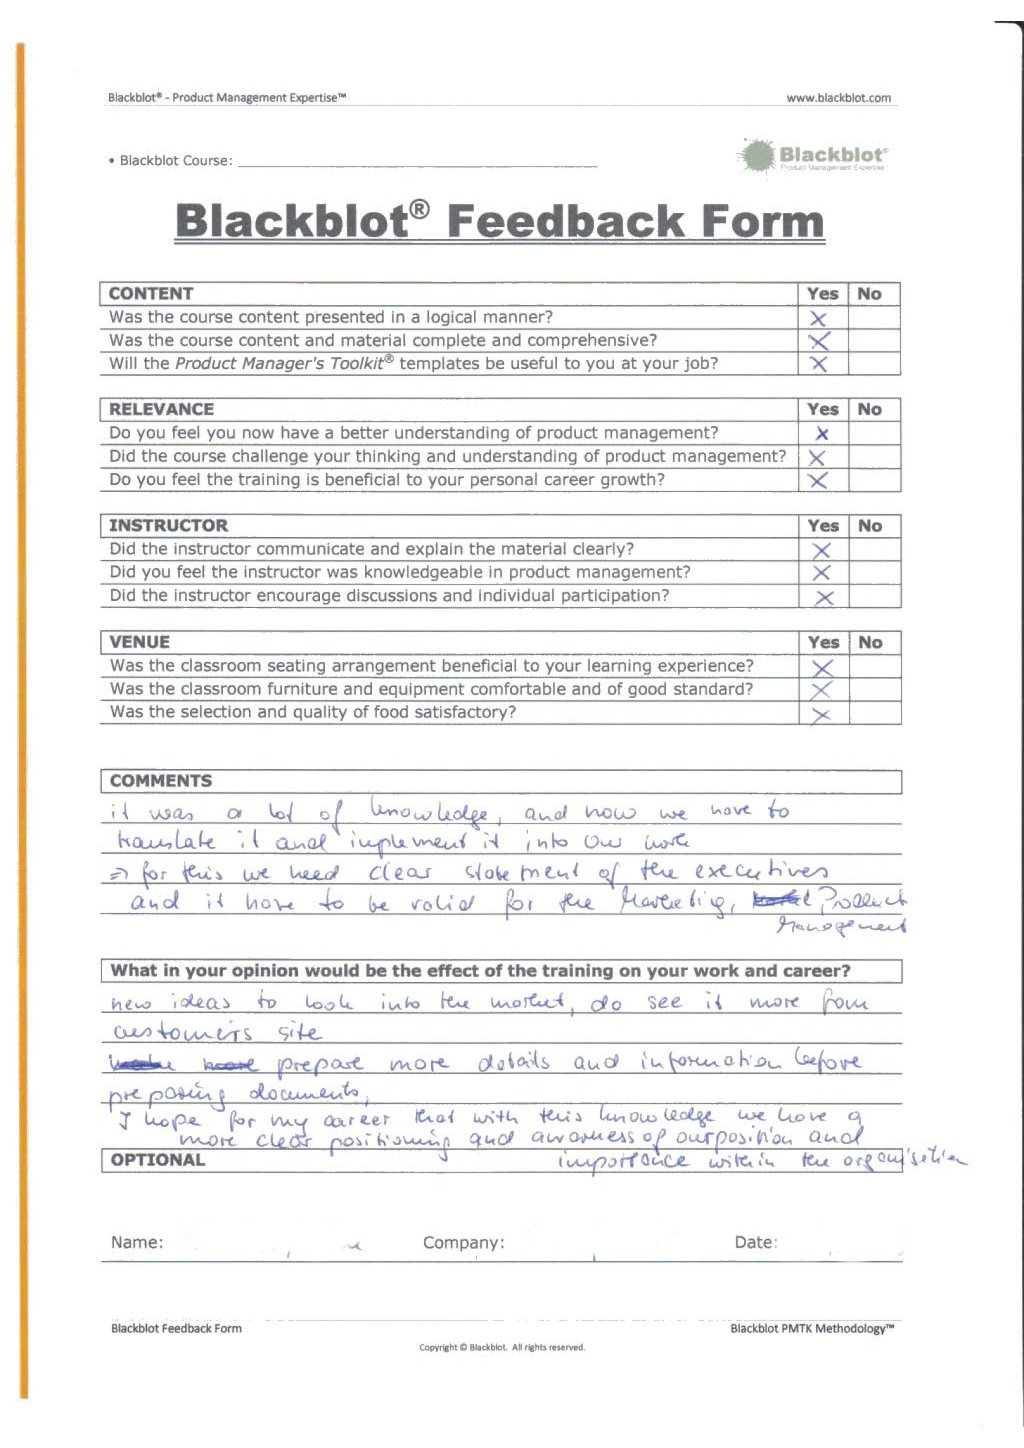 Blackblot: Blackblot_Strategic_Product_Management_Feedback_Form_024.jpg